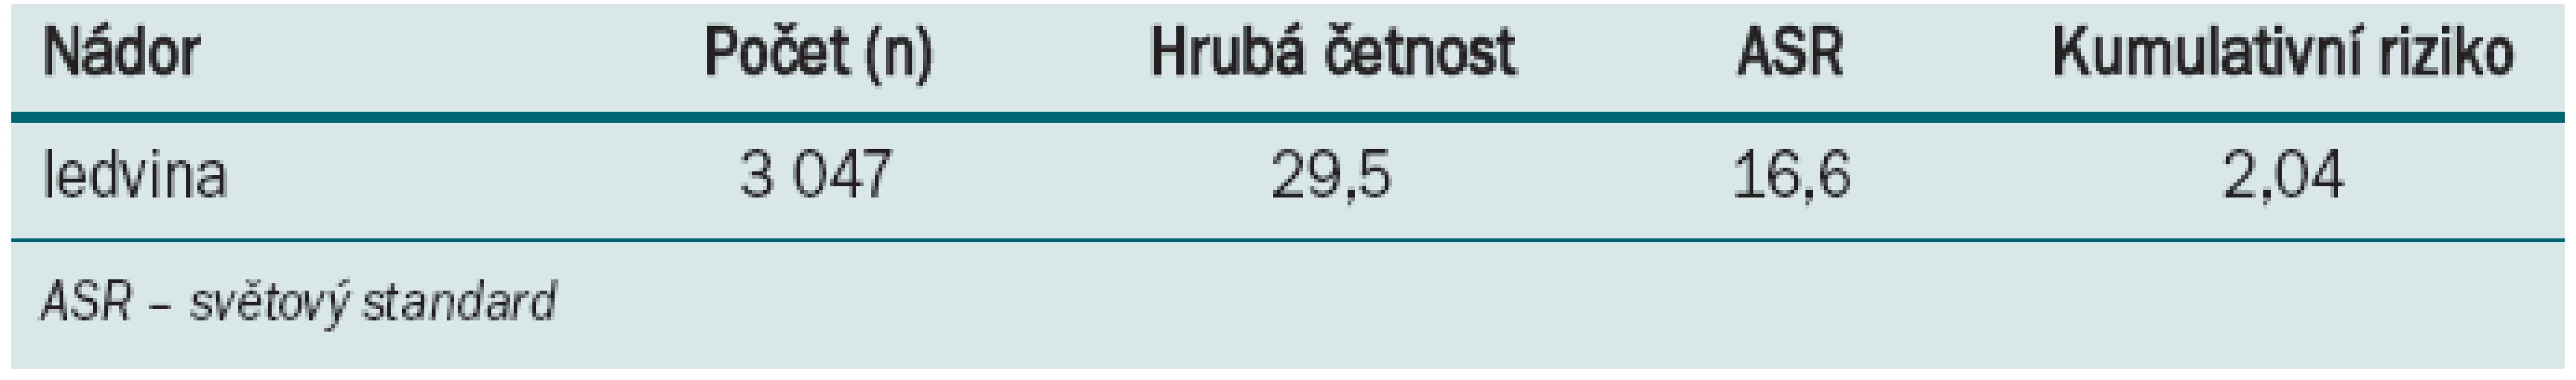 Porovnání hrubé incidence všech nádorových onemocnění ledvin v ČR se světovým průměrem (2008) [33].